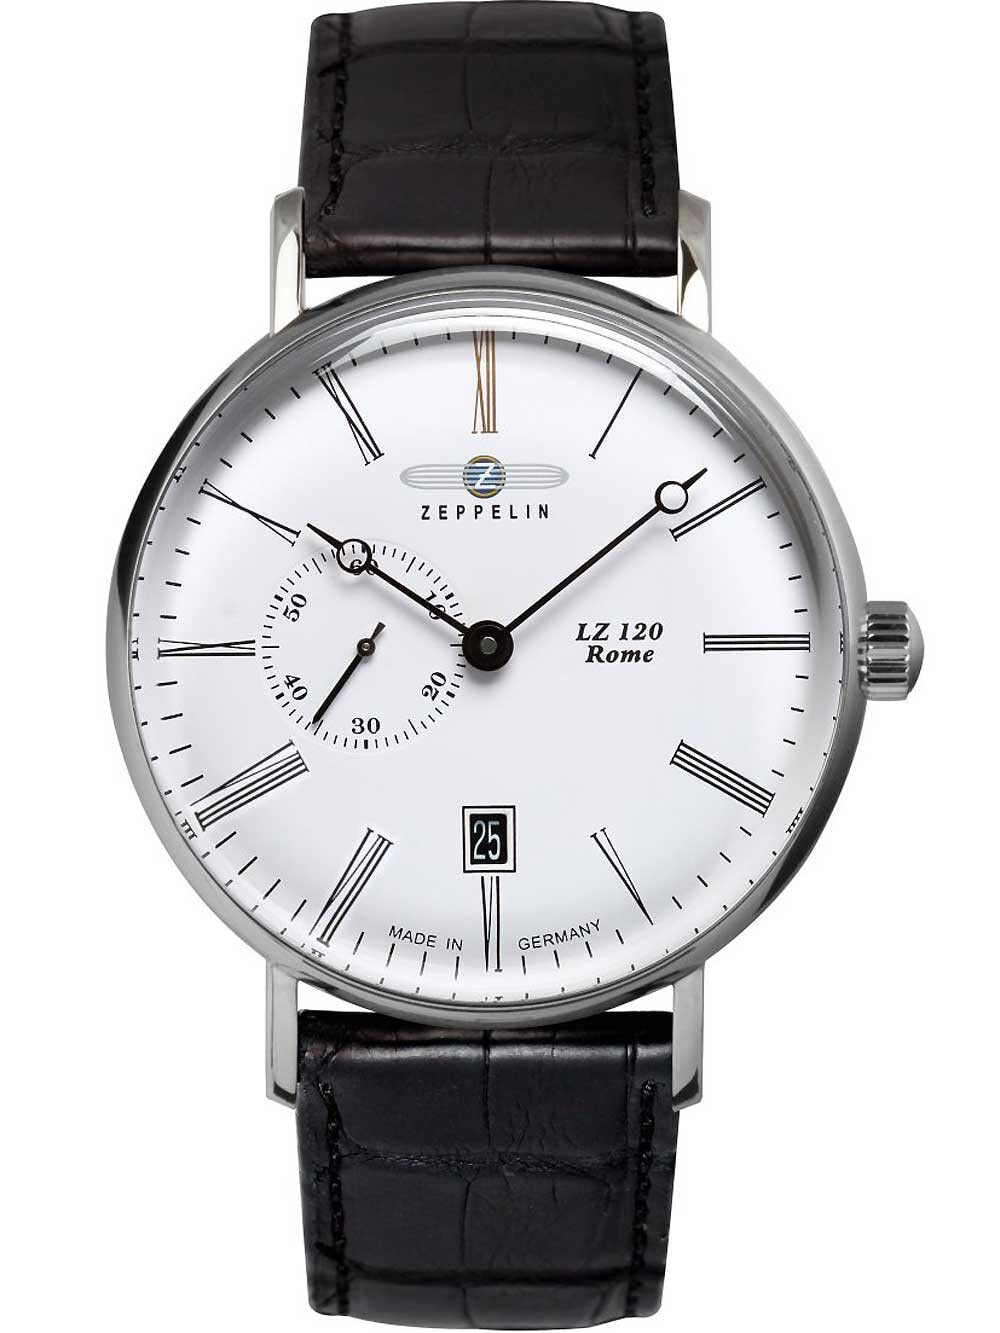 Мужские наручные часы с черным кожаным ремешком Zeppelin 7104-1 Rome automatic small second 41mm 5ATM